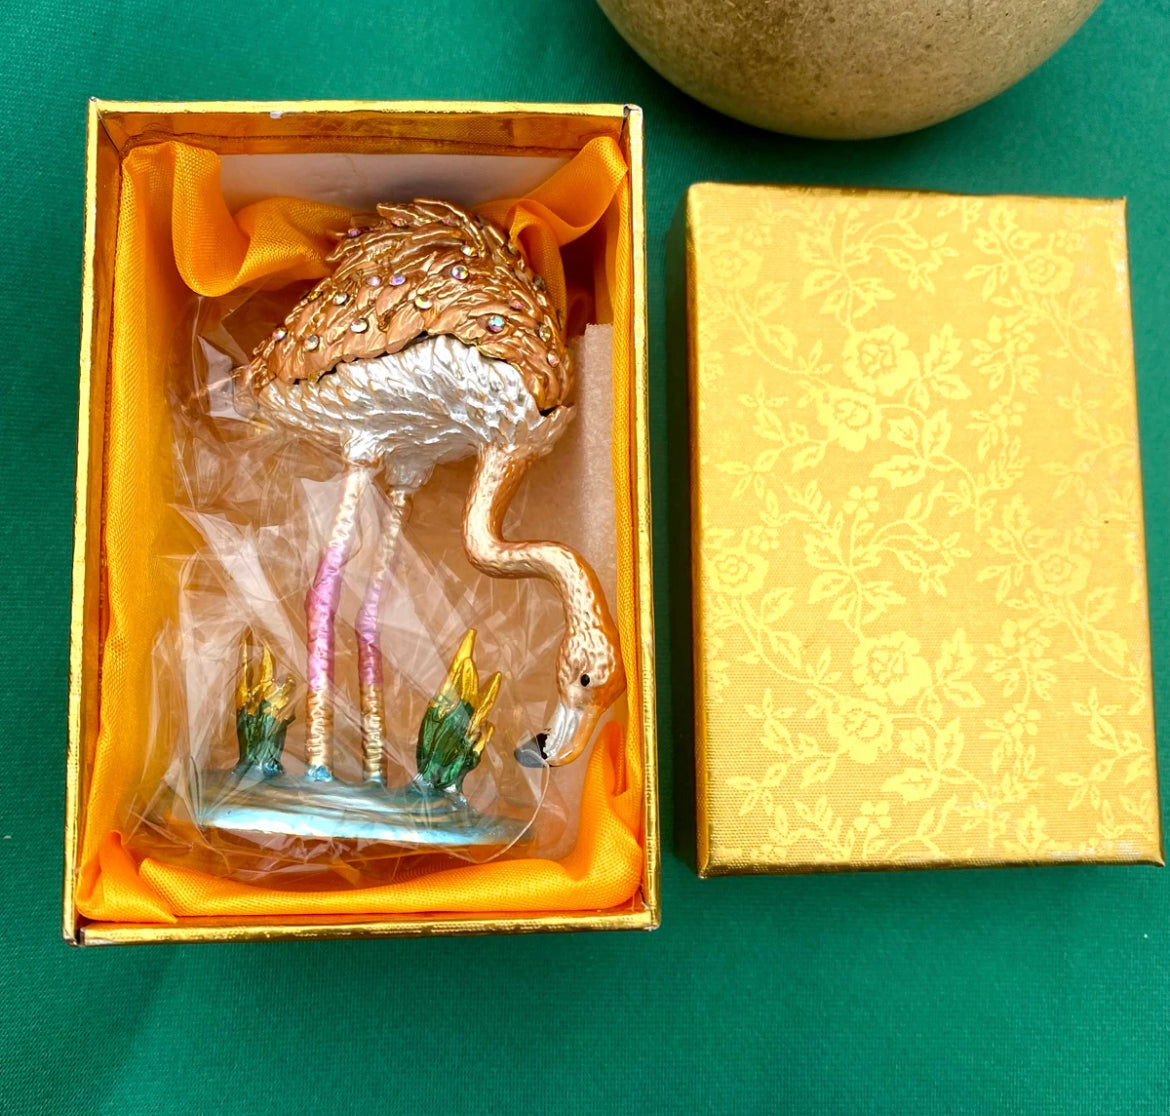 On Sale- Ring/Trinket Treasure Keeper- Flamingo